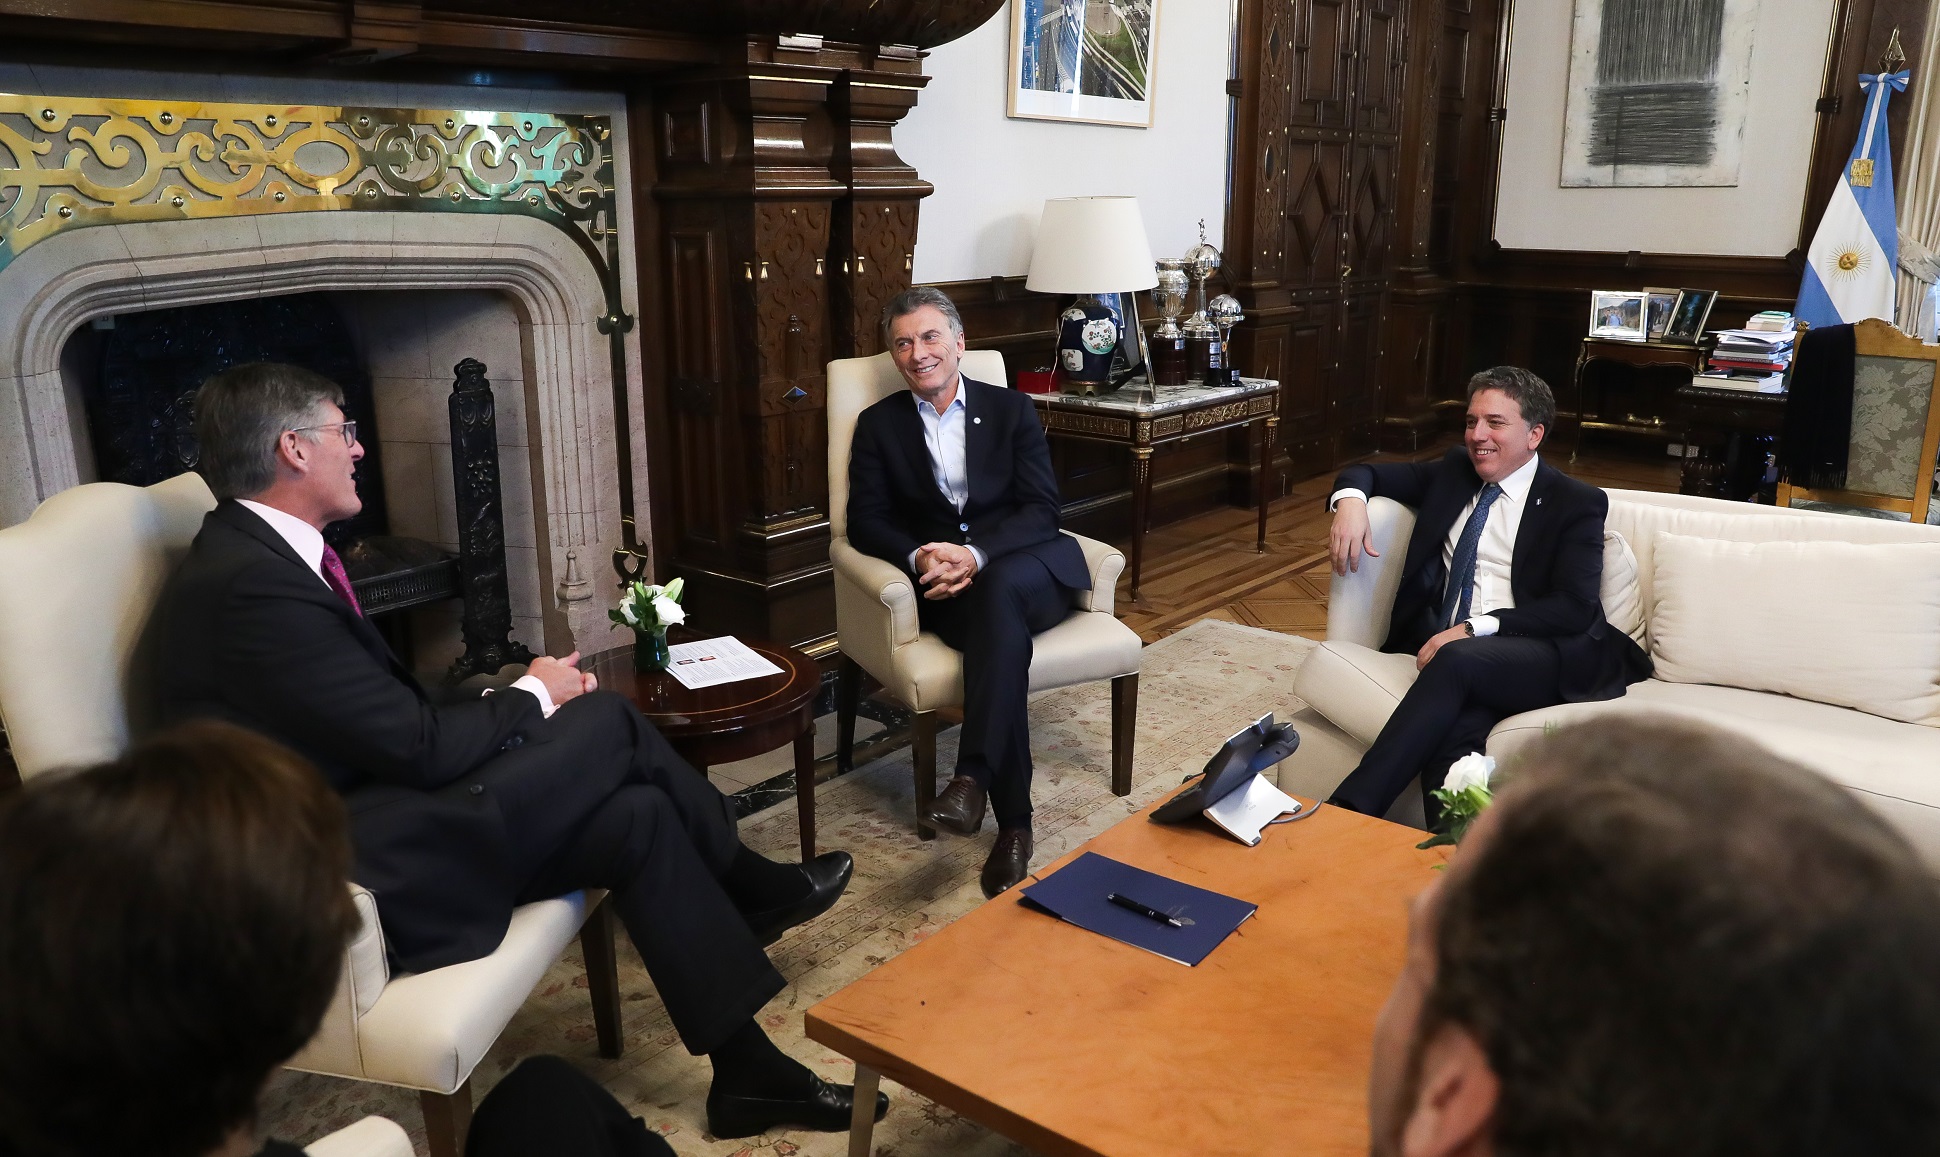 El presidente Macri recibió a autoridades del banco Citi